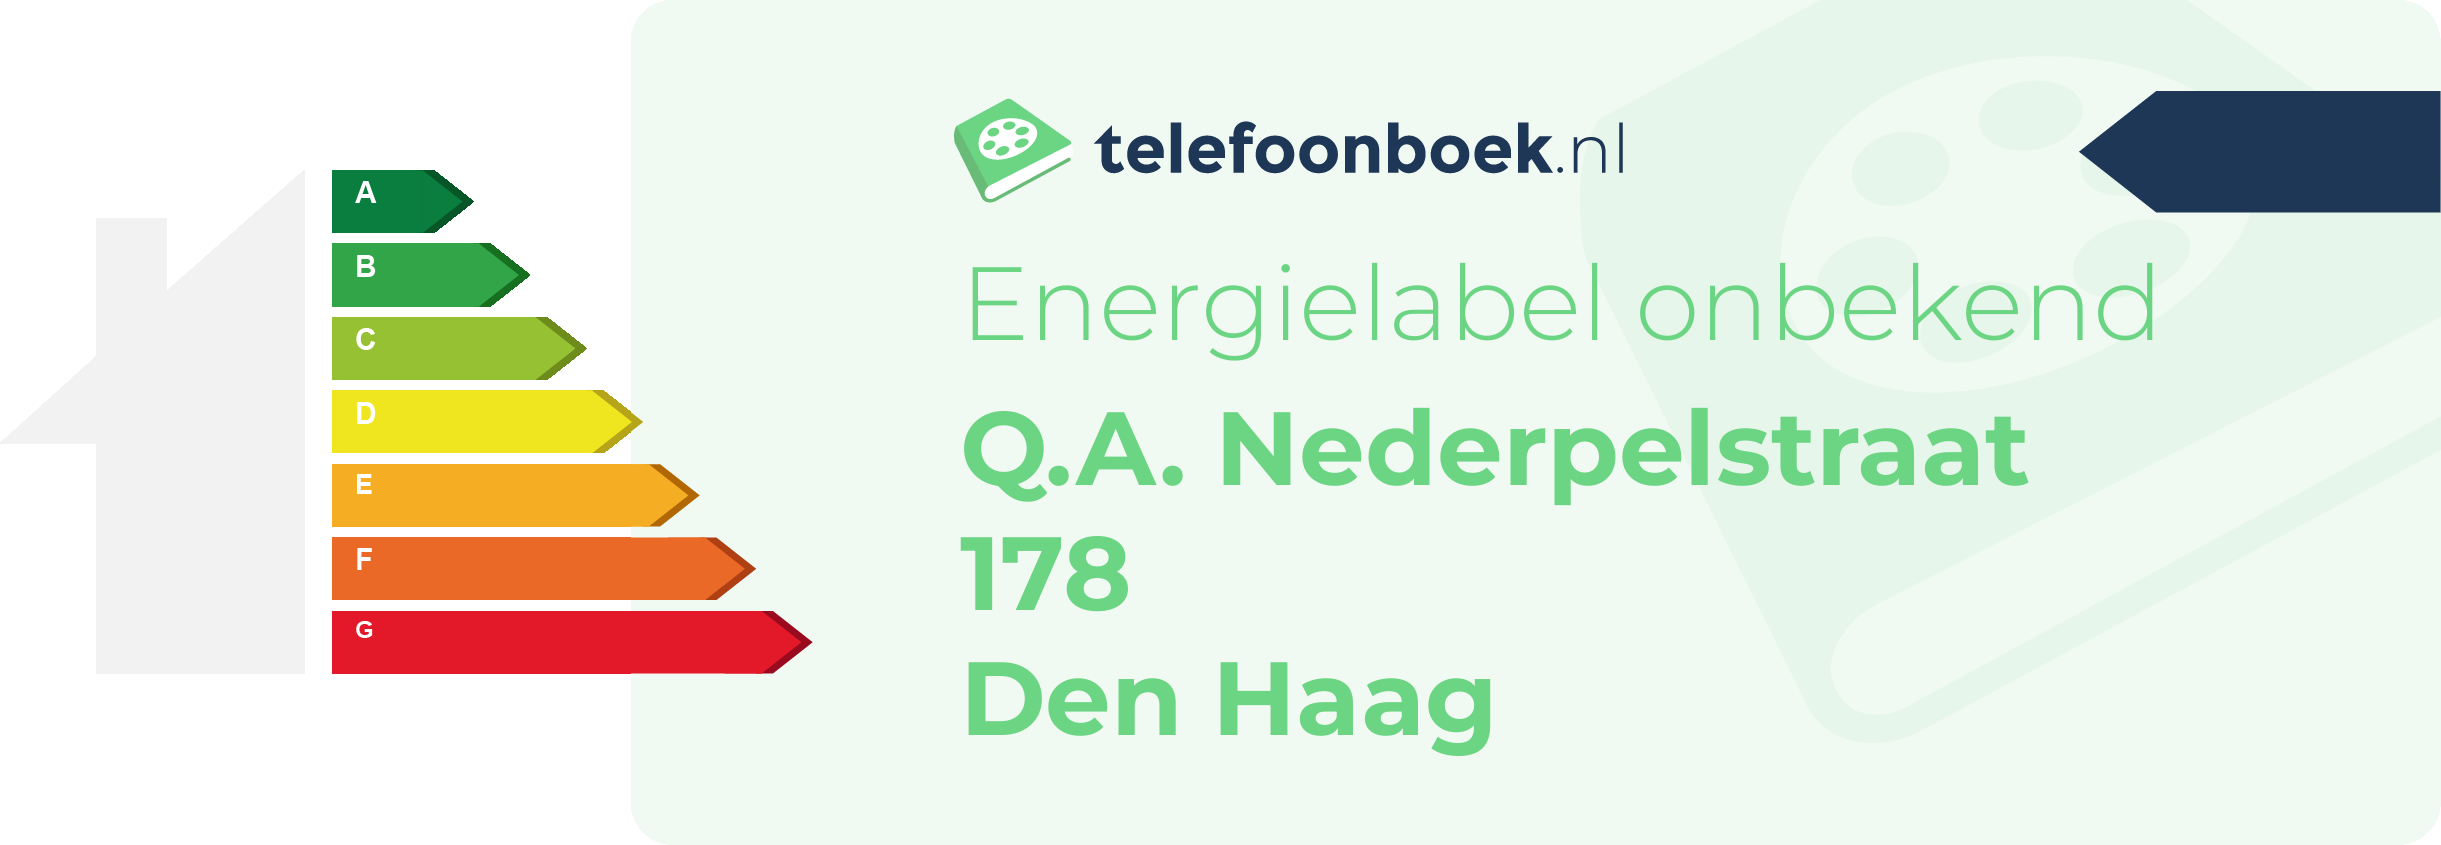 Energielabel Q.A. Nederpelstraat 178 Den Haag